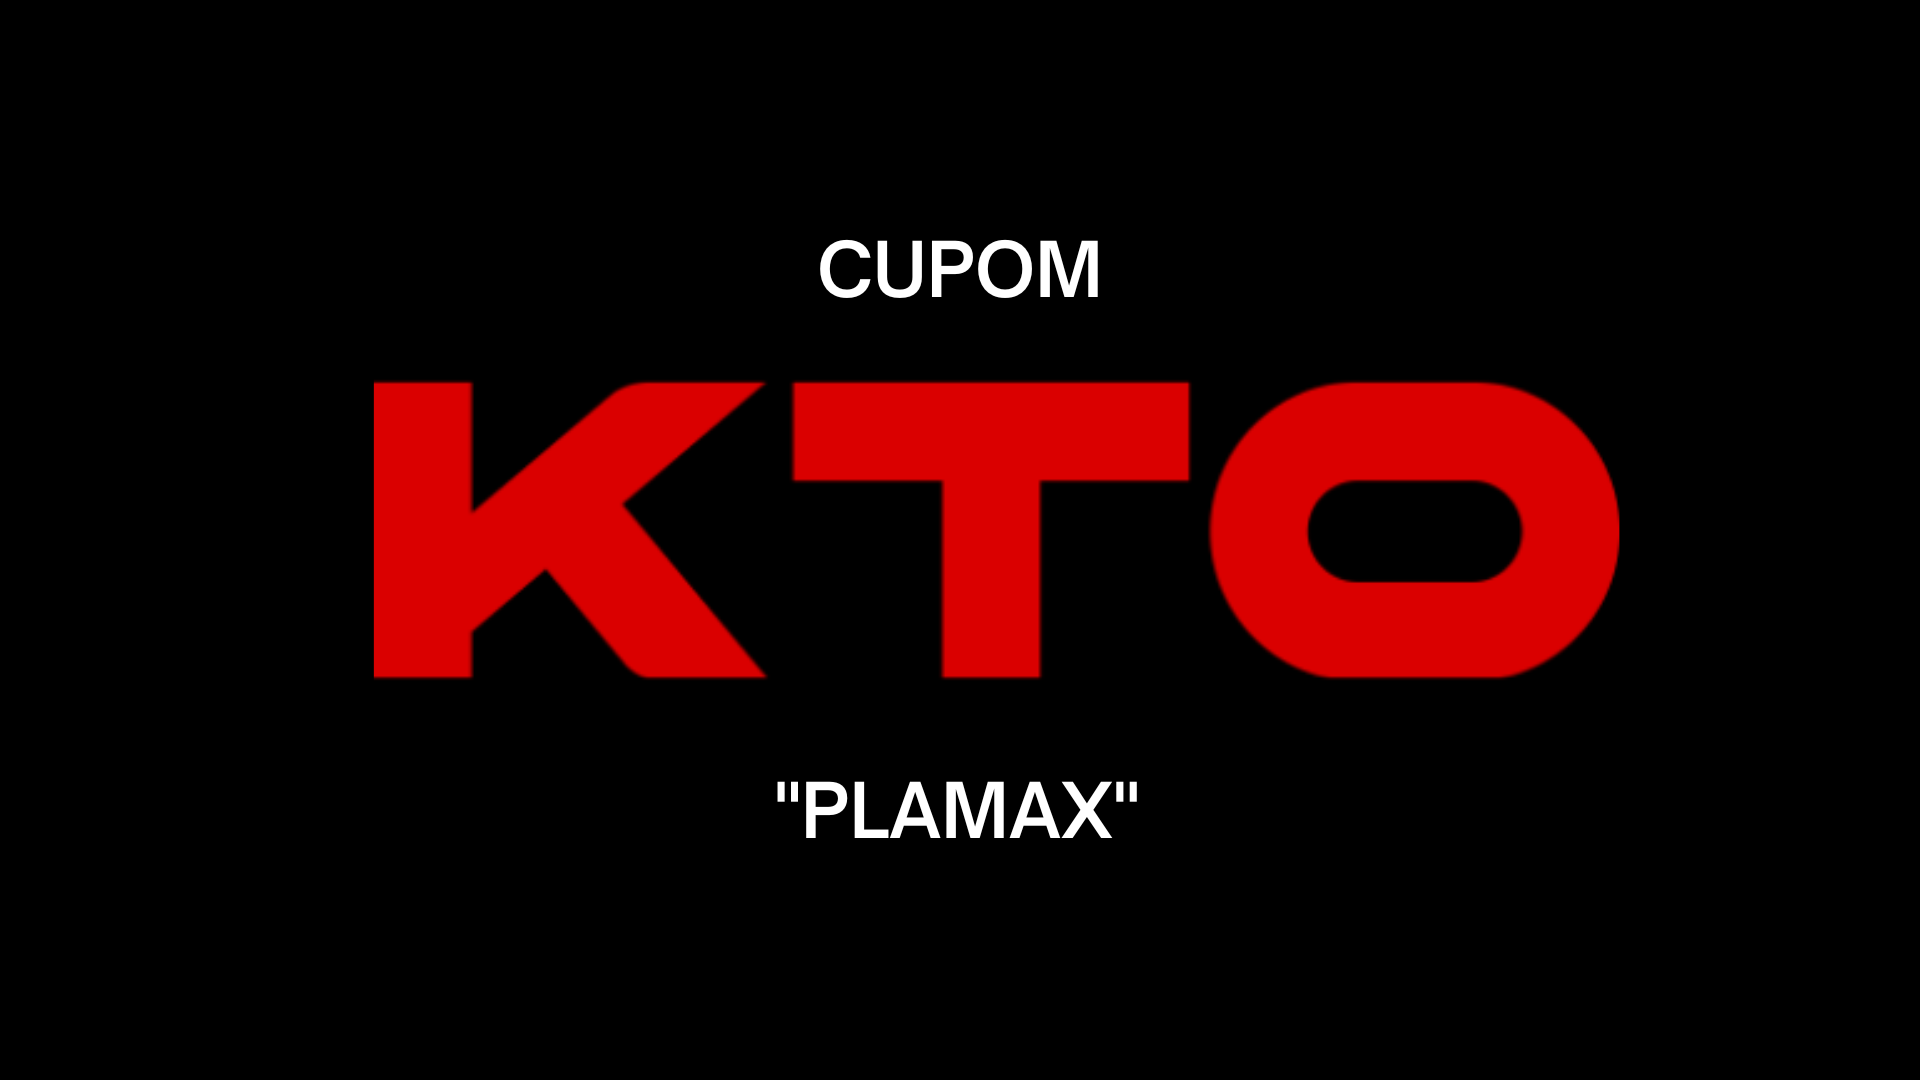 Cupom KTO 2023 “PLAMAX”: como ganhar até R$200 para apostar em futebol?